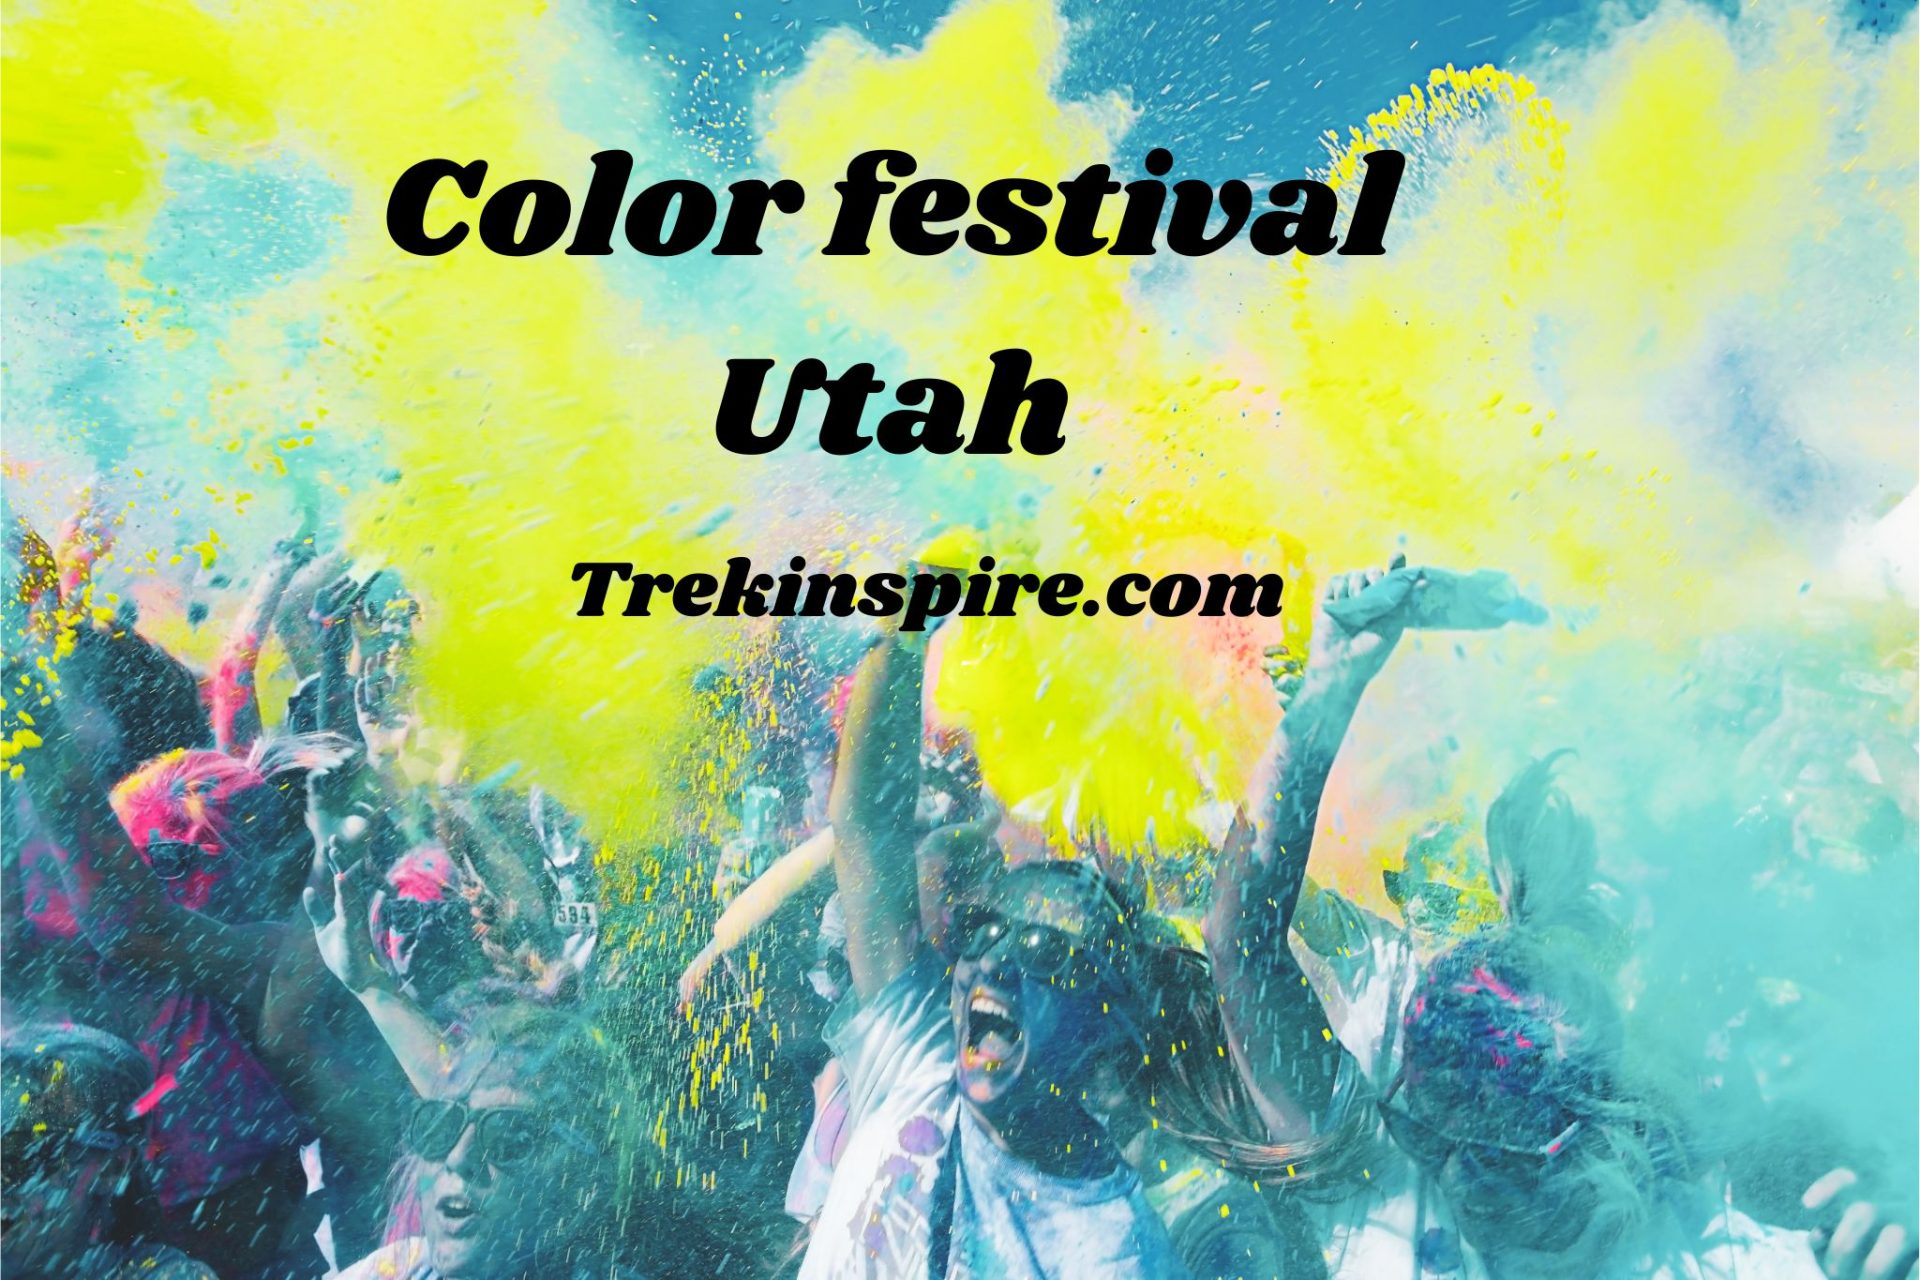 Color festival Utah